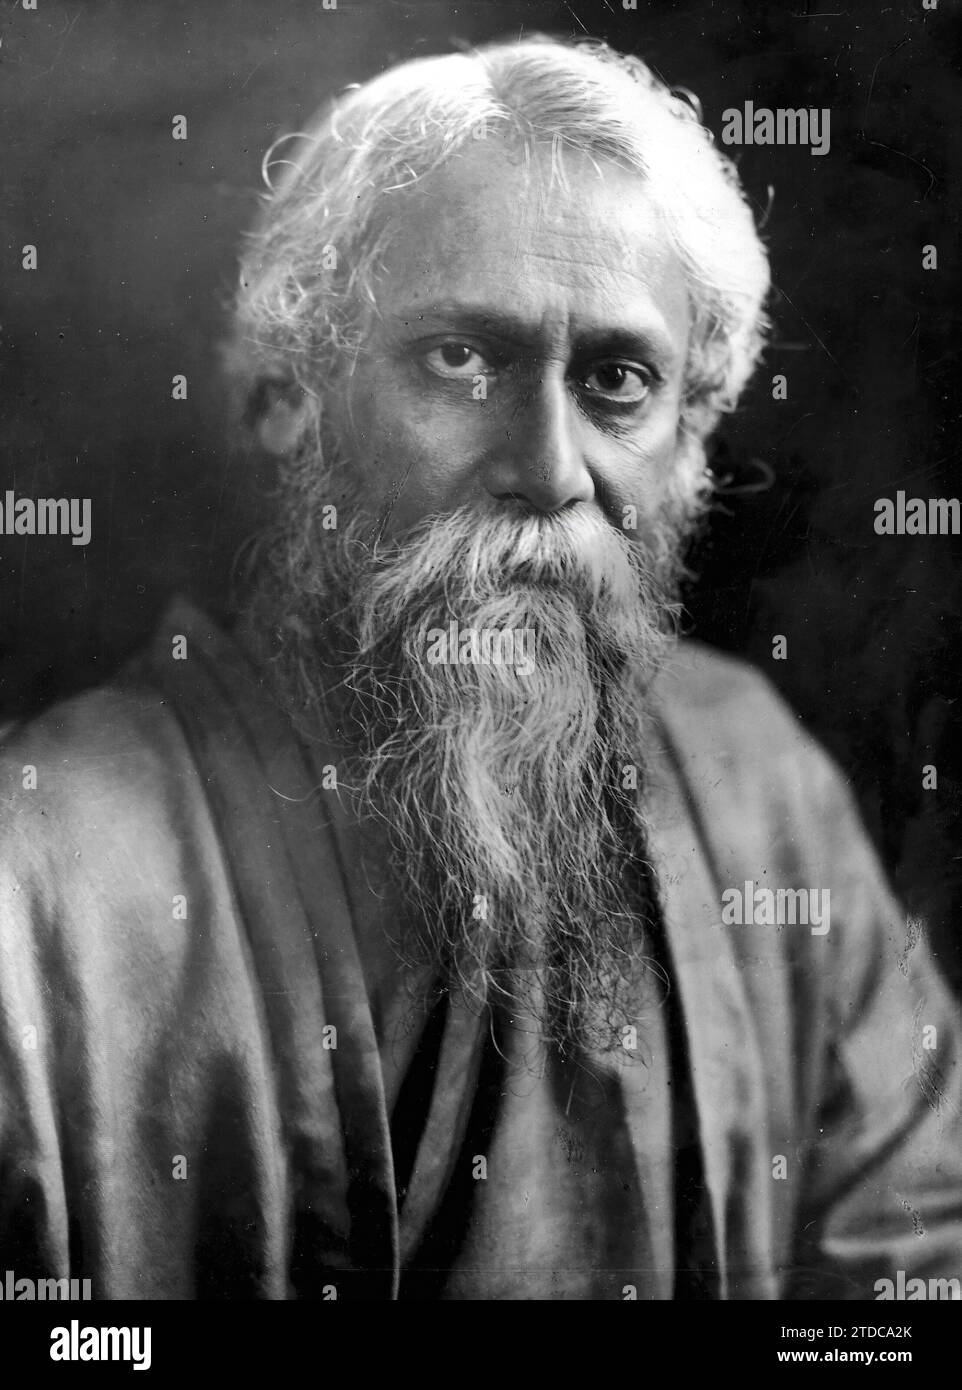 Rabindranath Tagore in a portrait dated 1930. Credit: Album / Archivo ABC Stock Photo